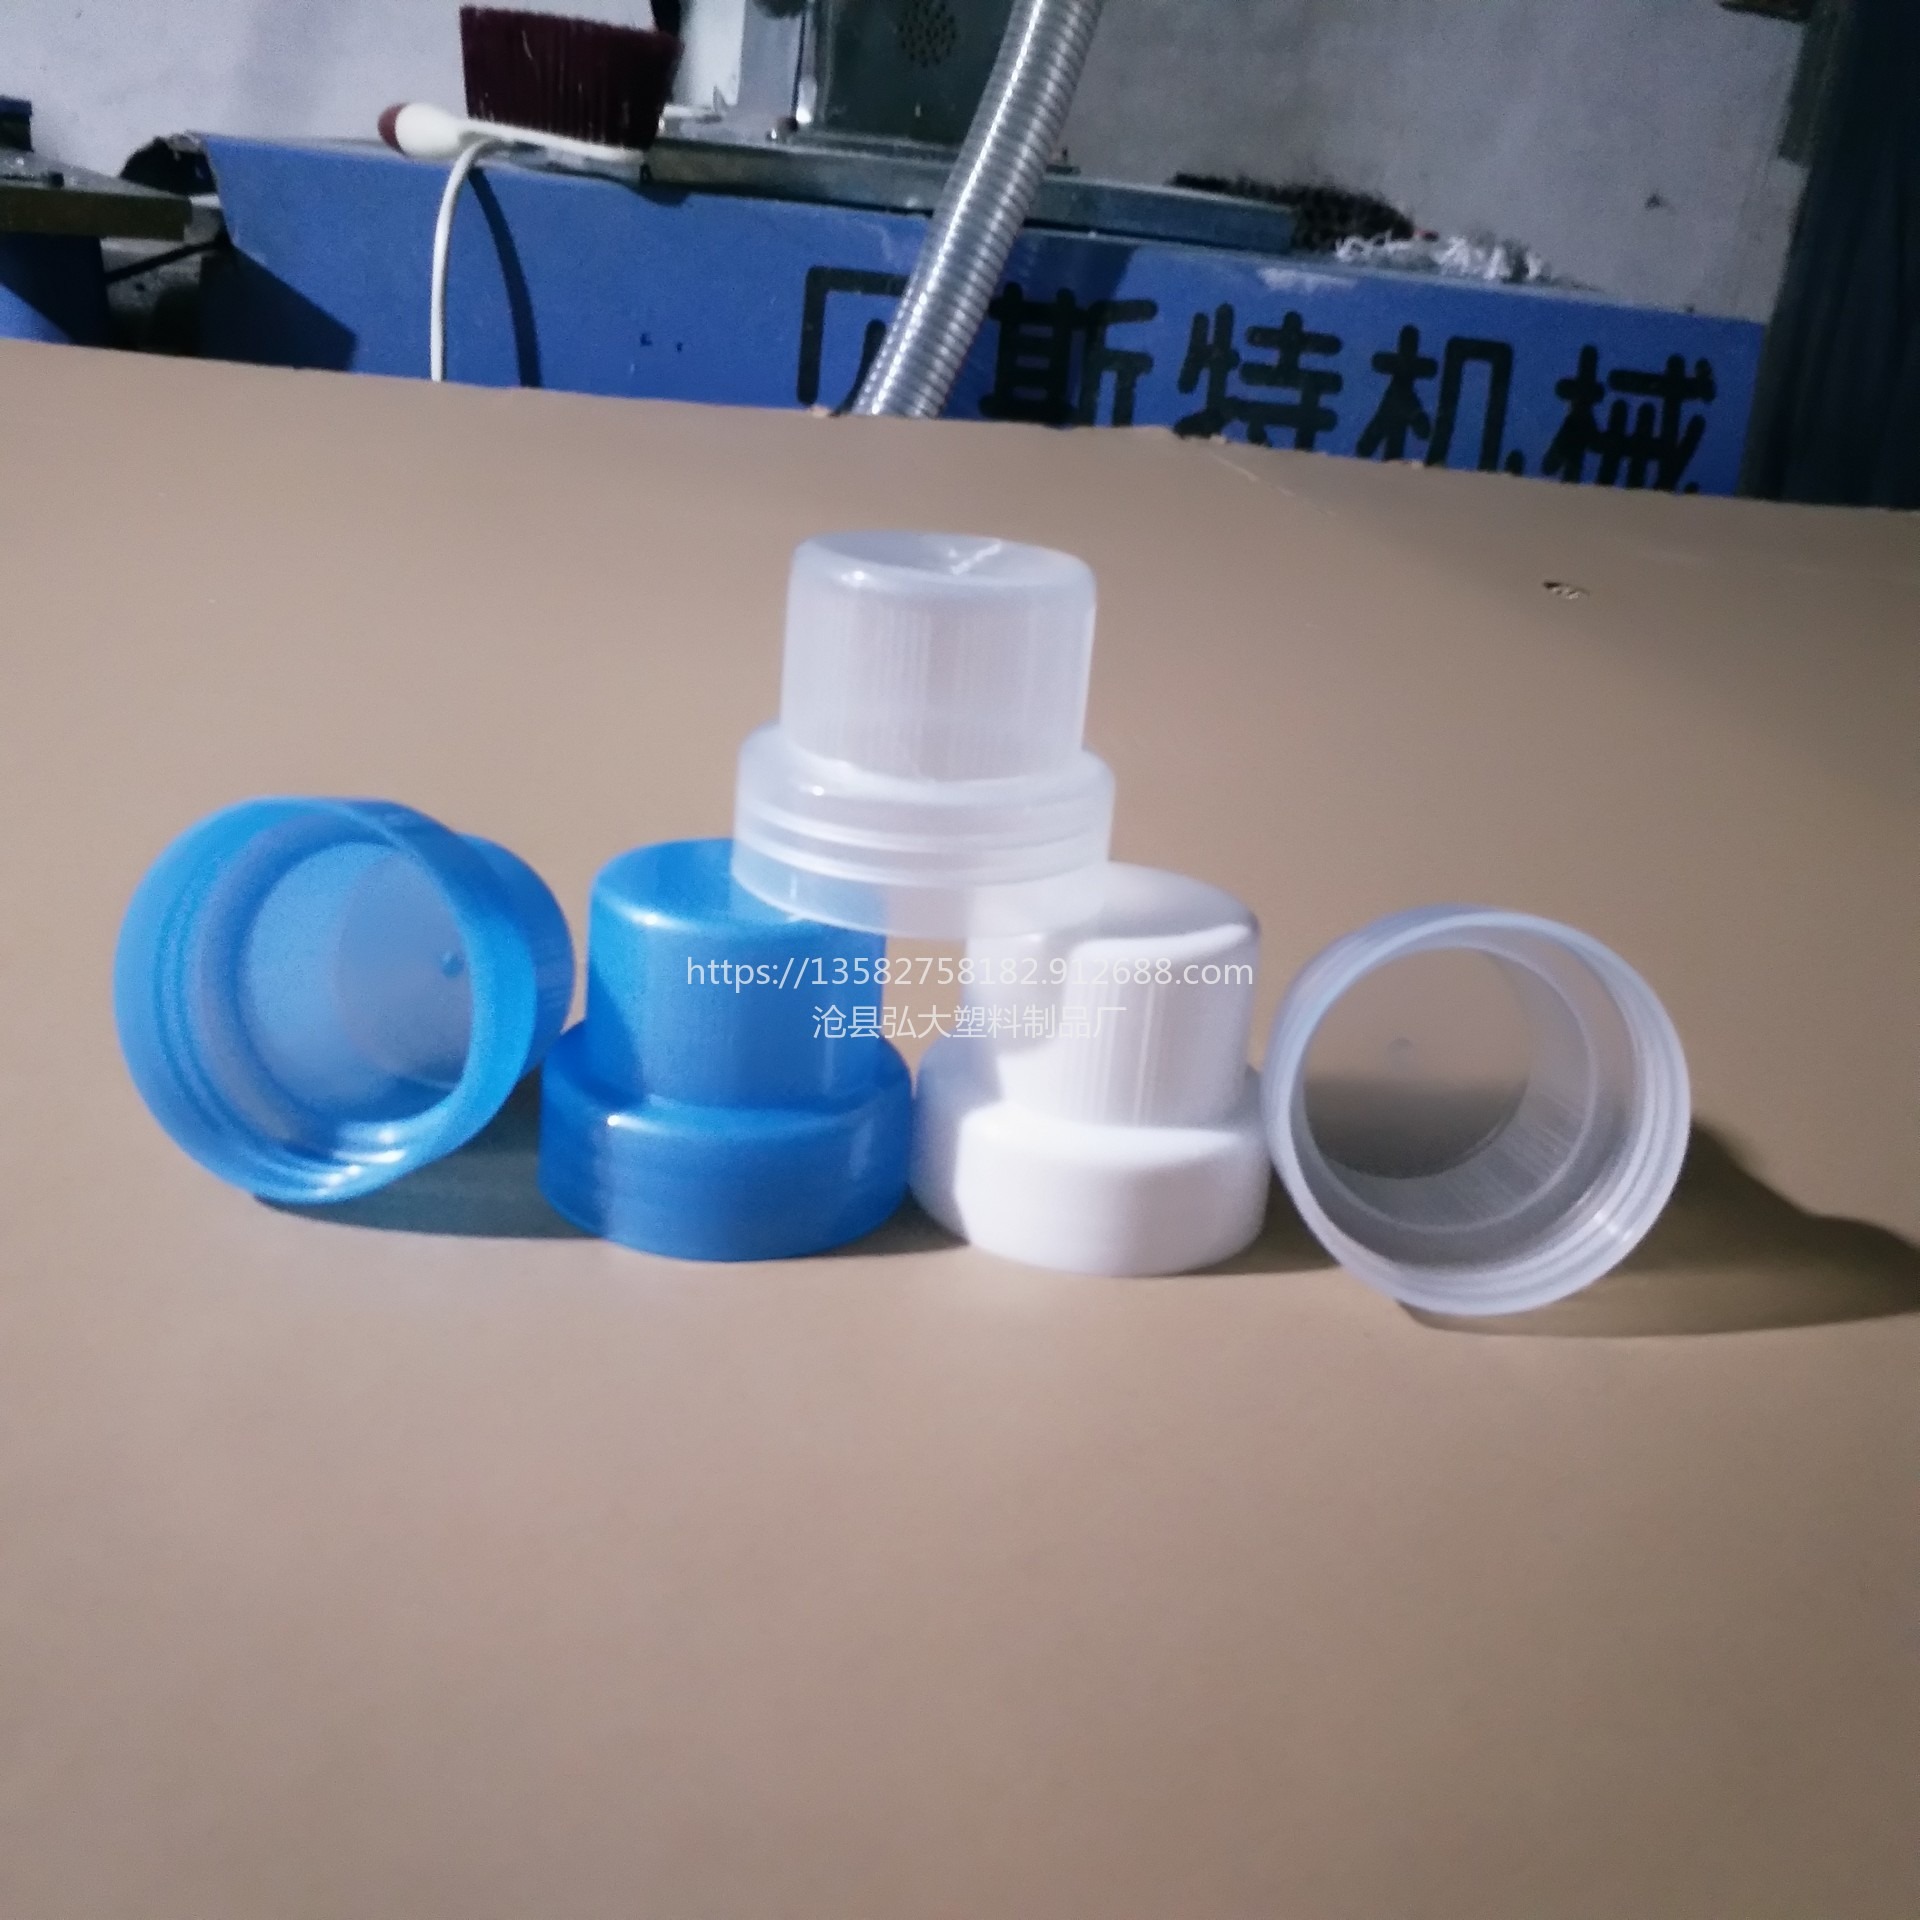 弘大塑业 食用塑料桶盖 厂家直销 颜色可定制 一升盖中盖